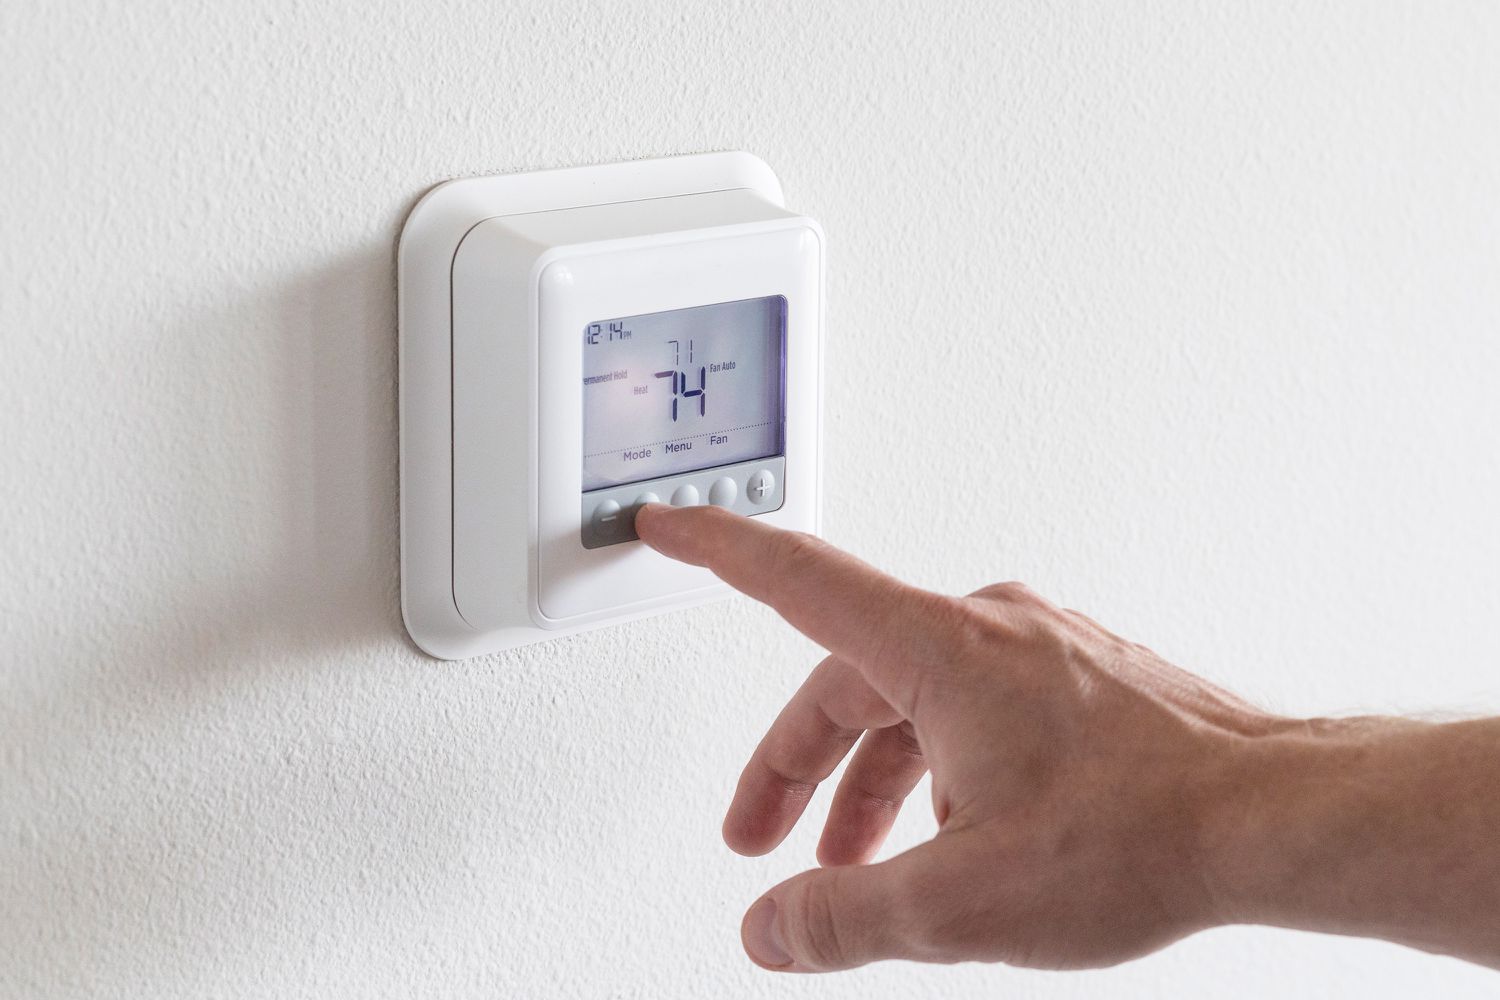 Thermostatprogramm wird von Hand eingestellt